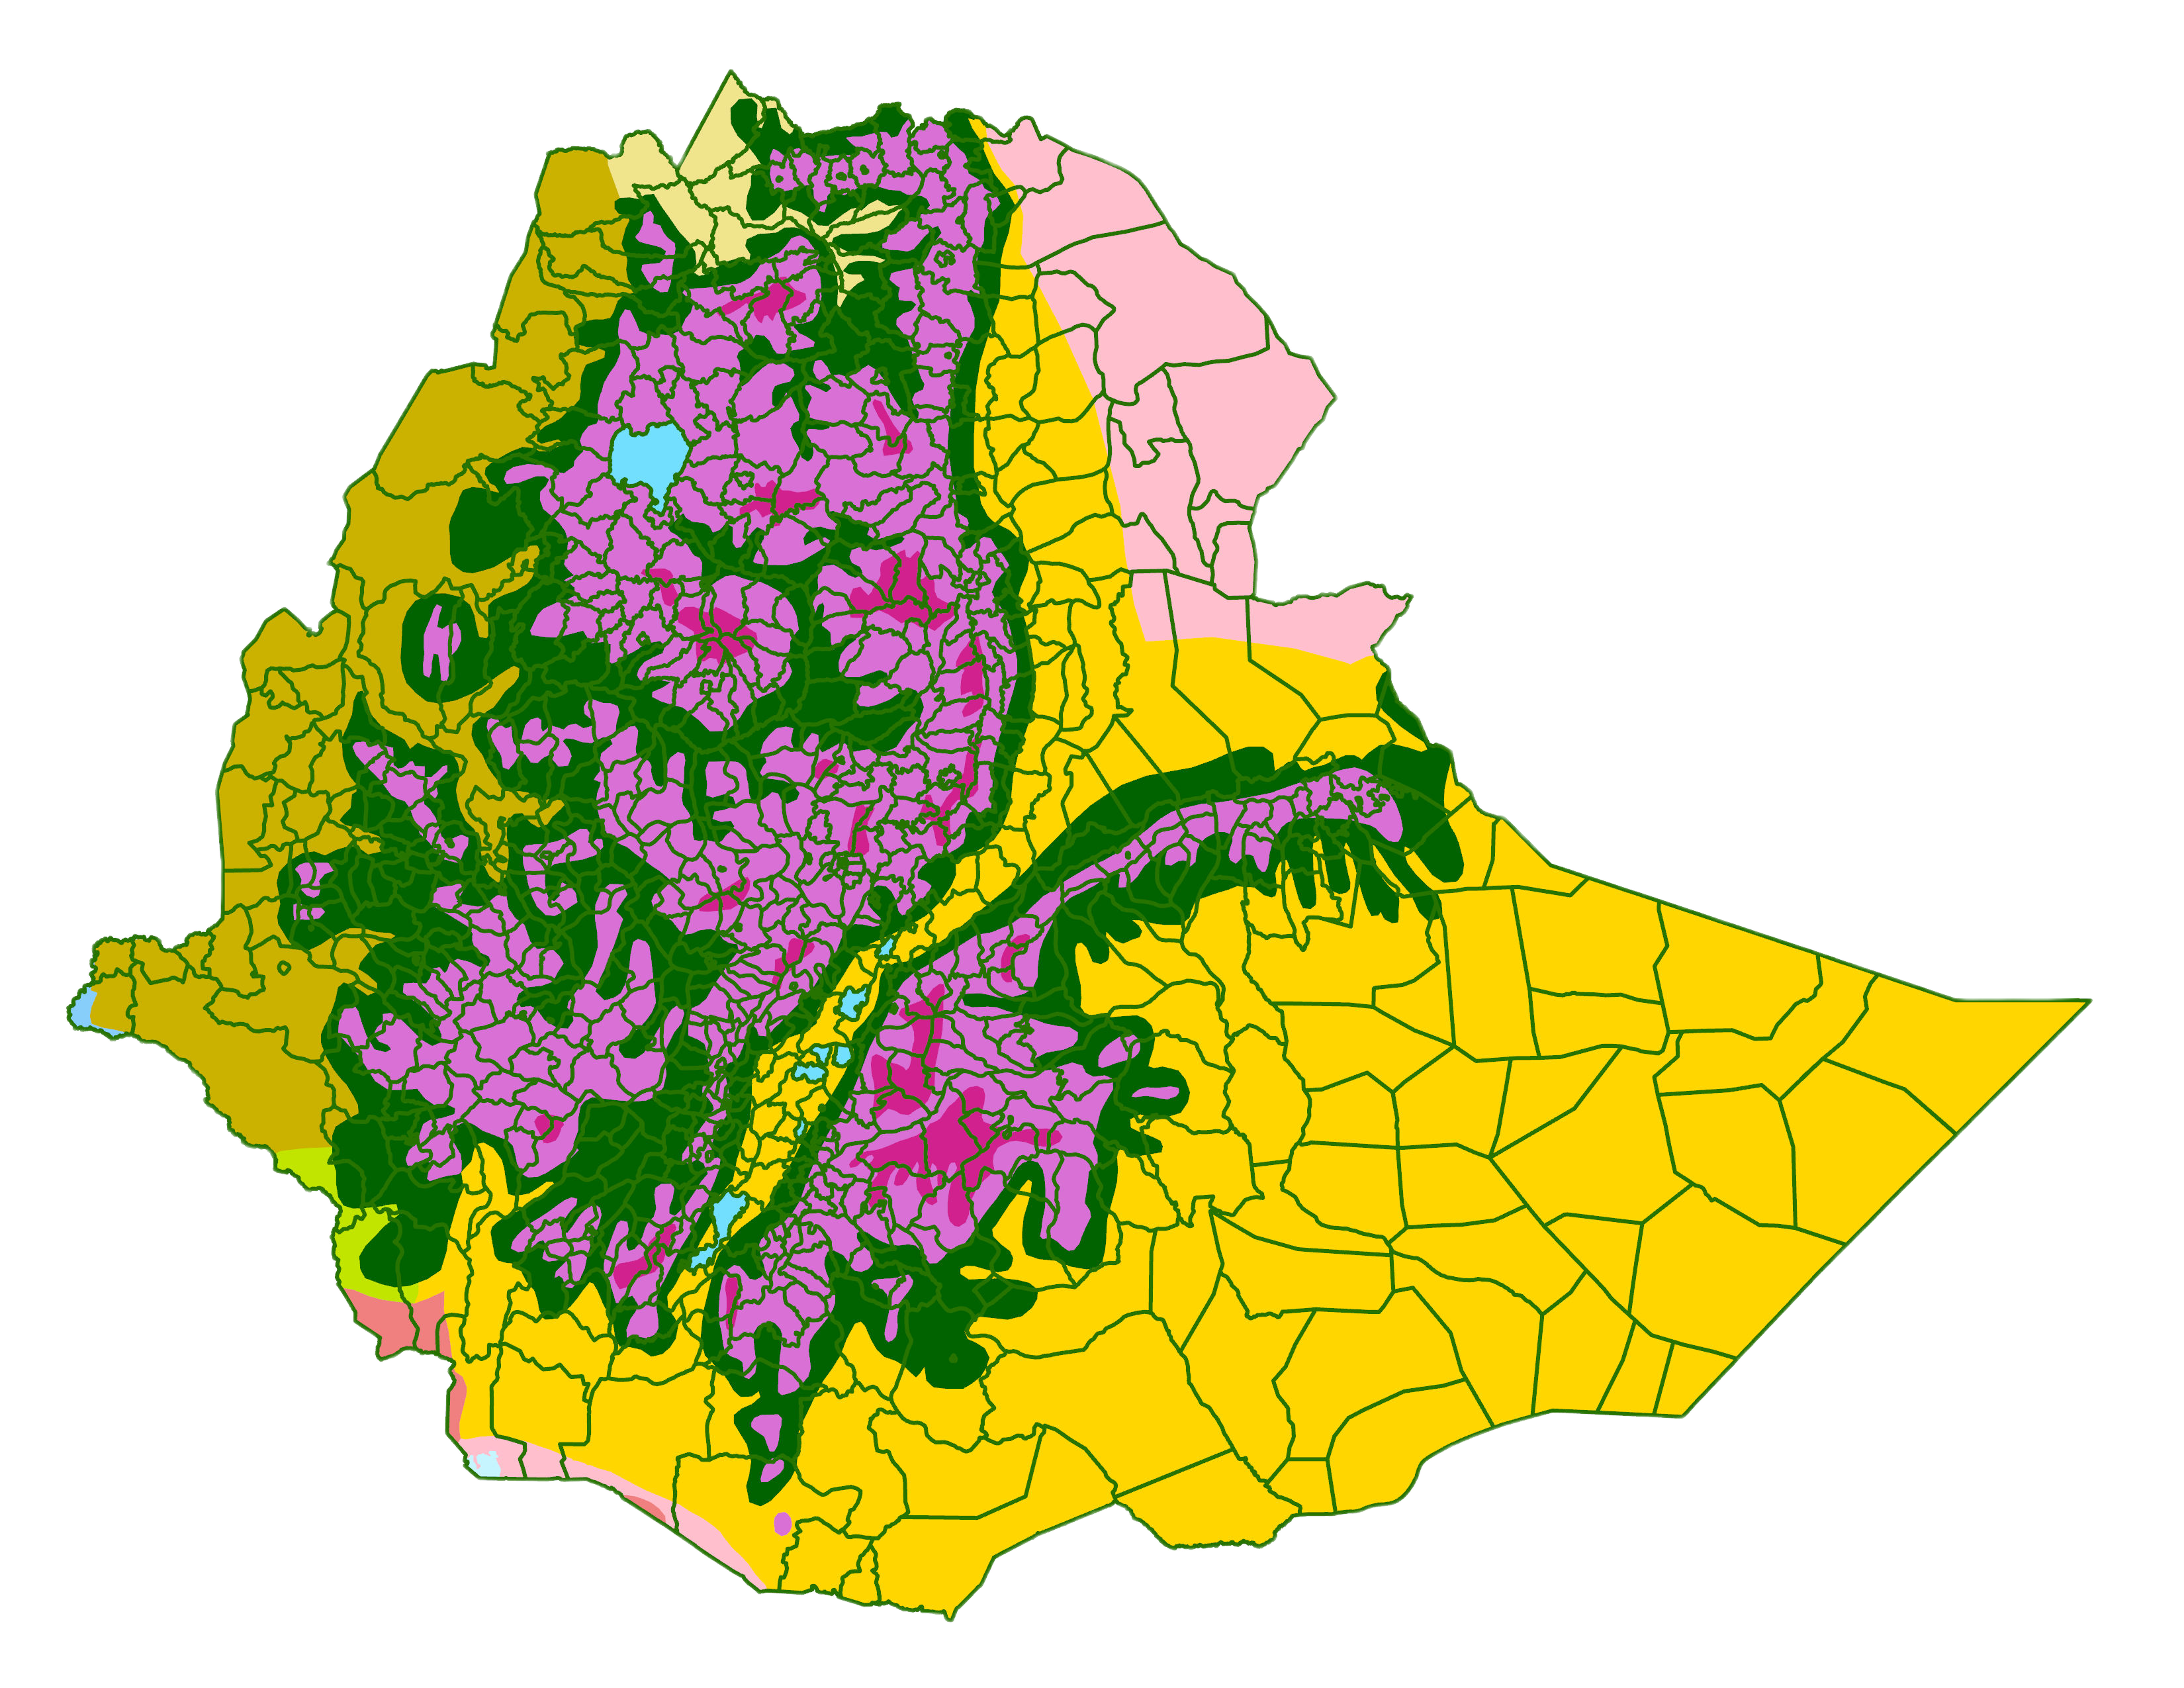 Ethiopia Third Admin level over Ecoregions